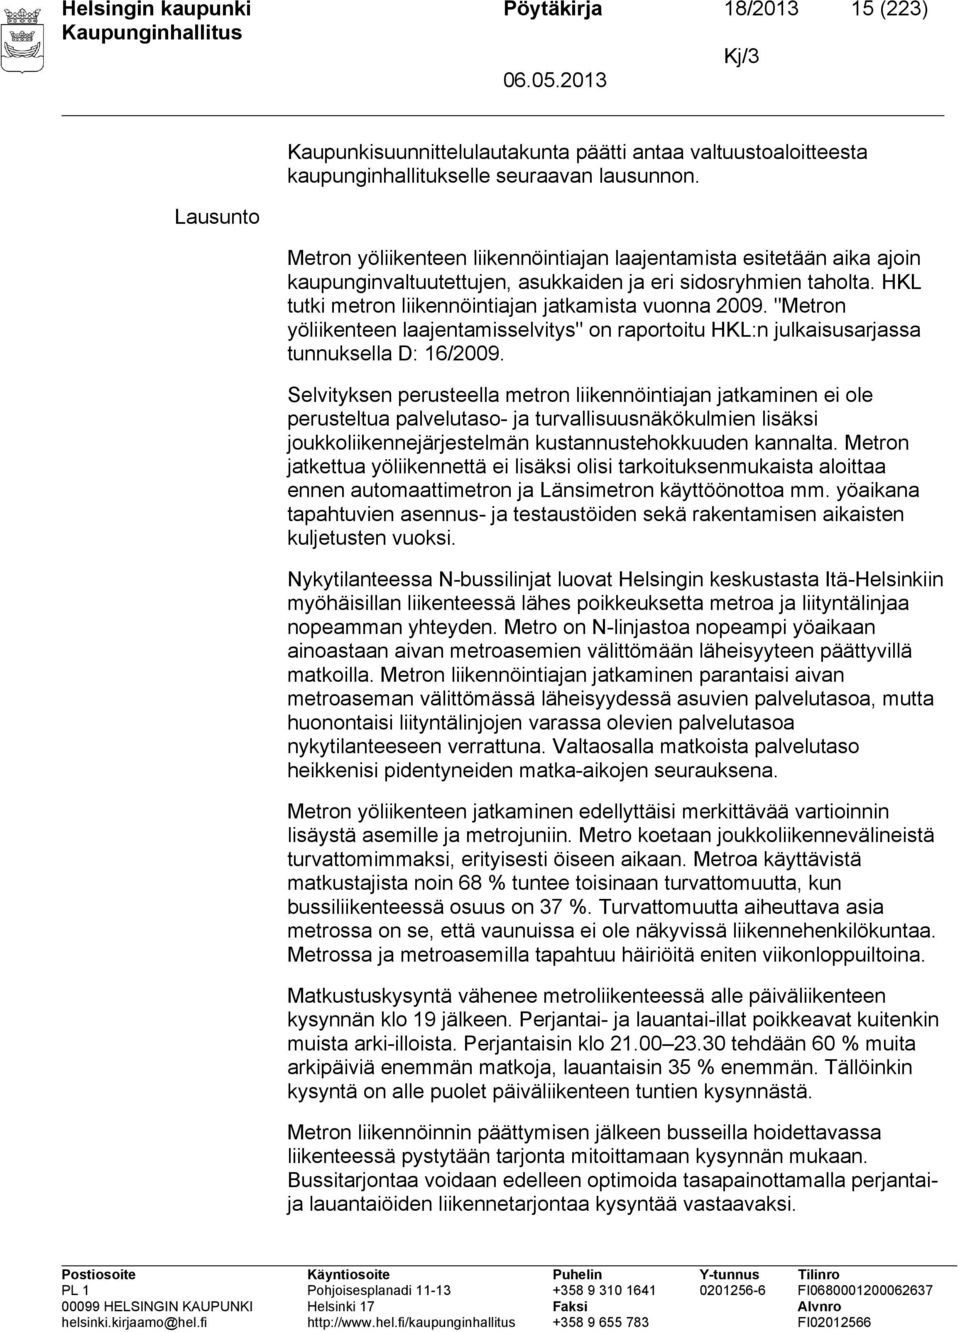 "Metron yöliikenteen laajentamisselvitys" on raportoitu HKL:n julkaisusarjassa tunnuksella D: 16/2009.